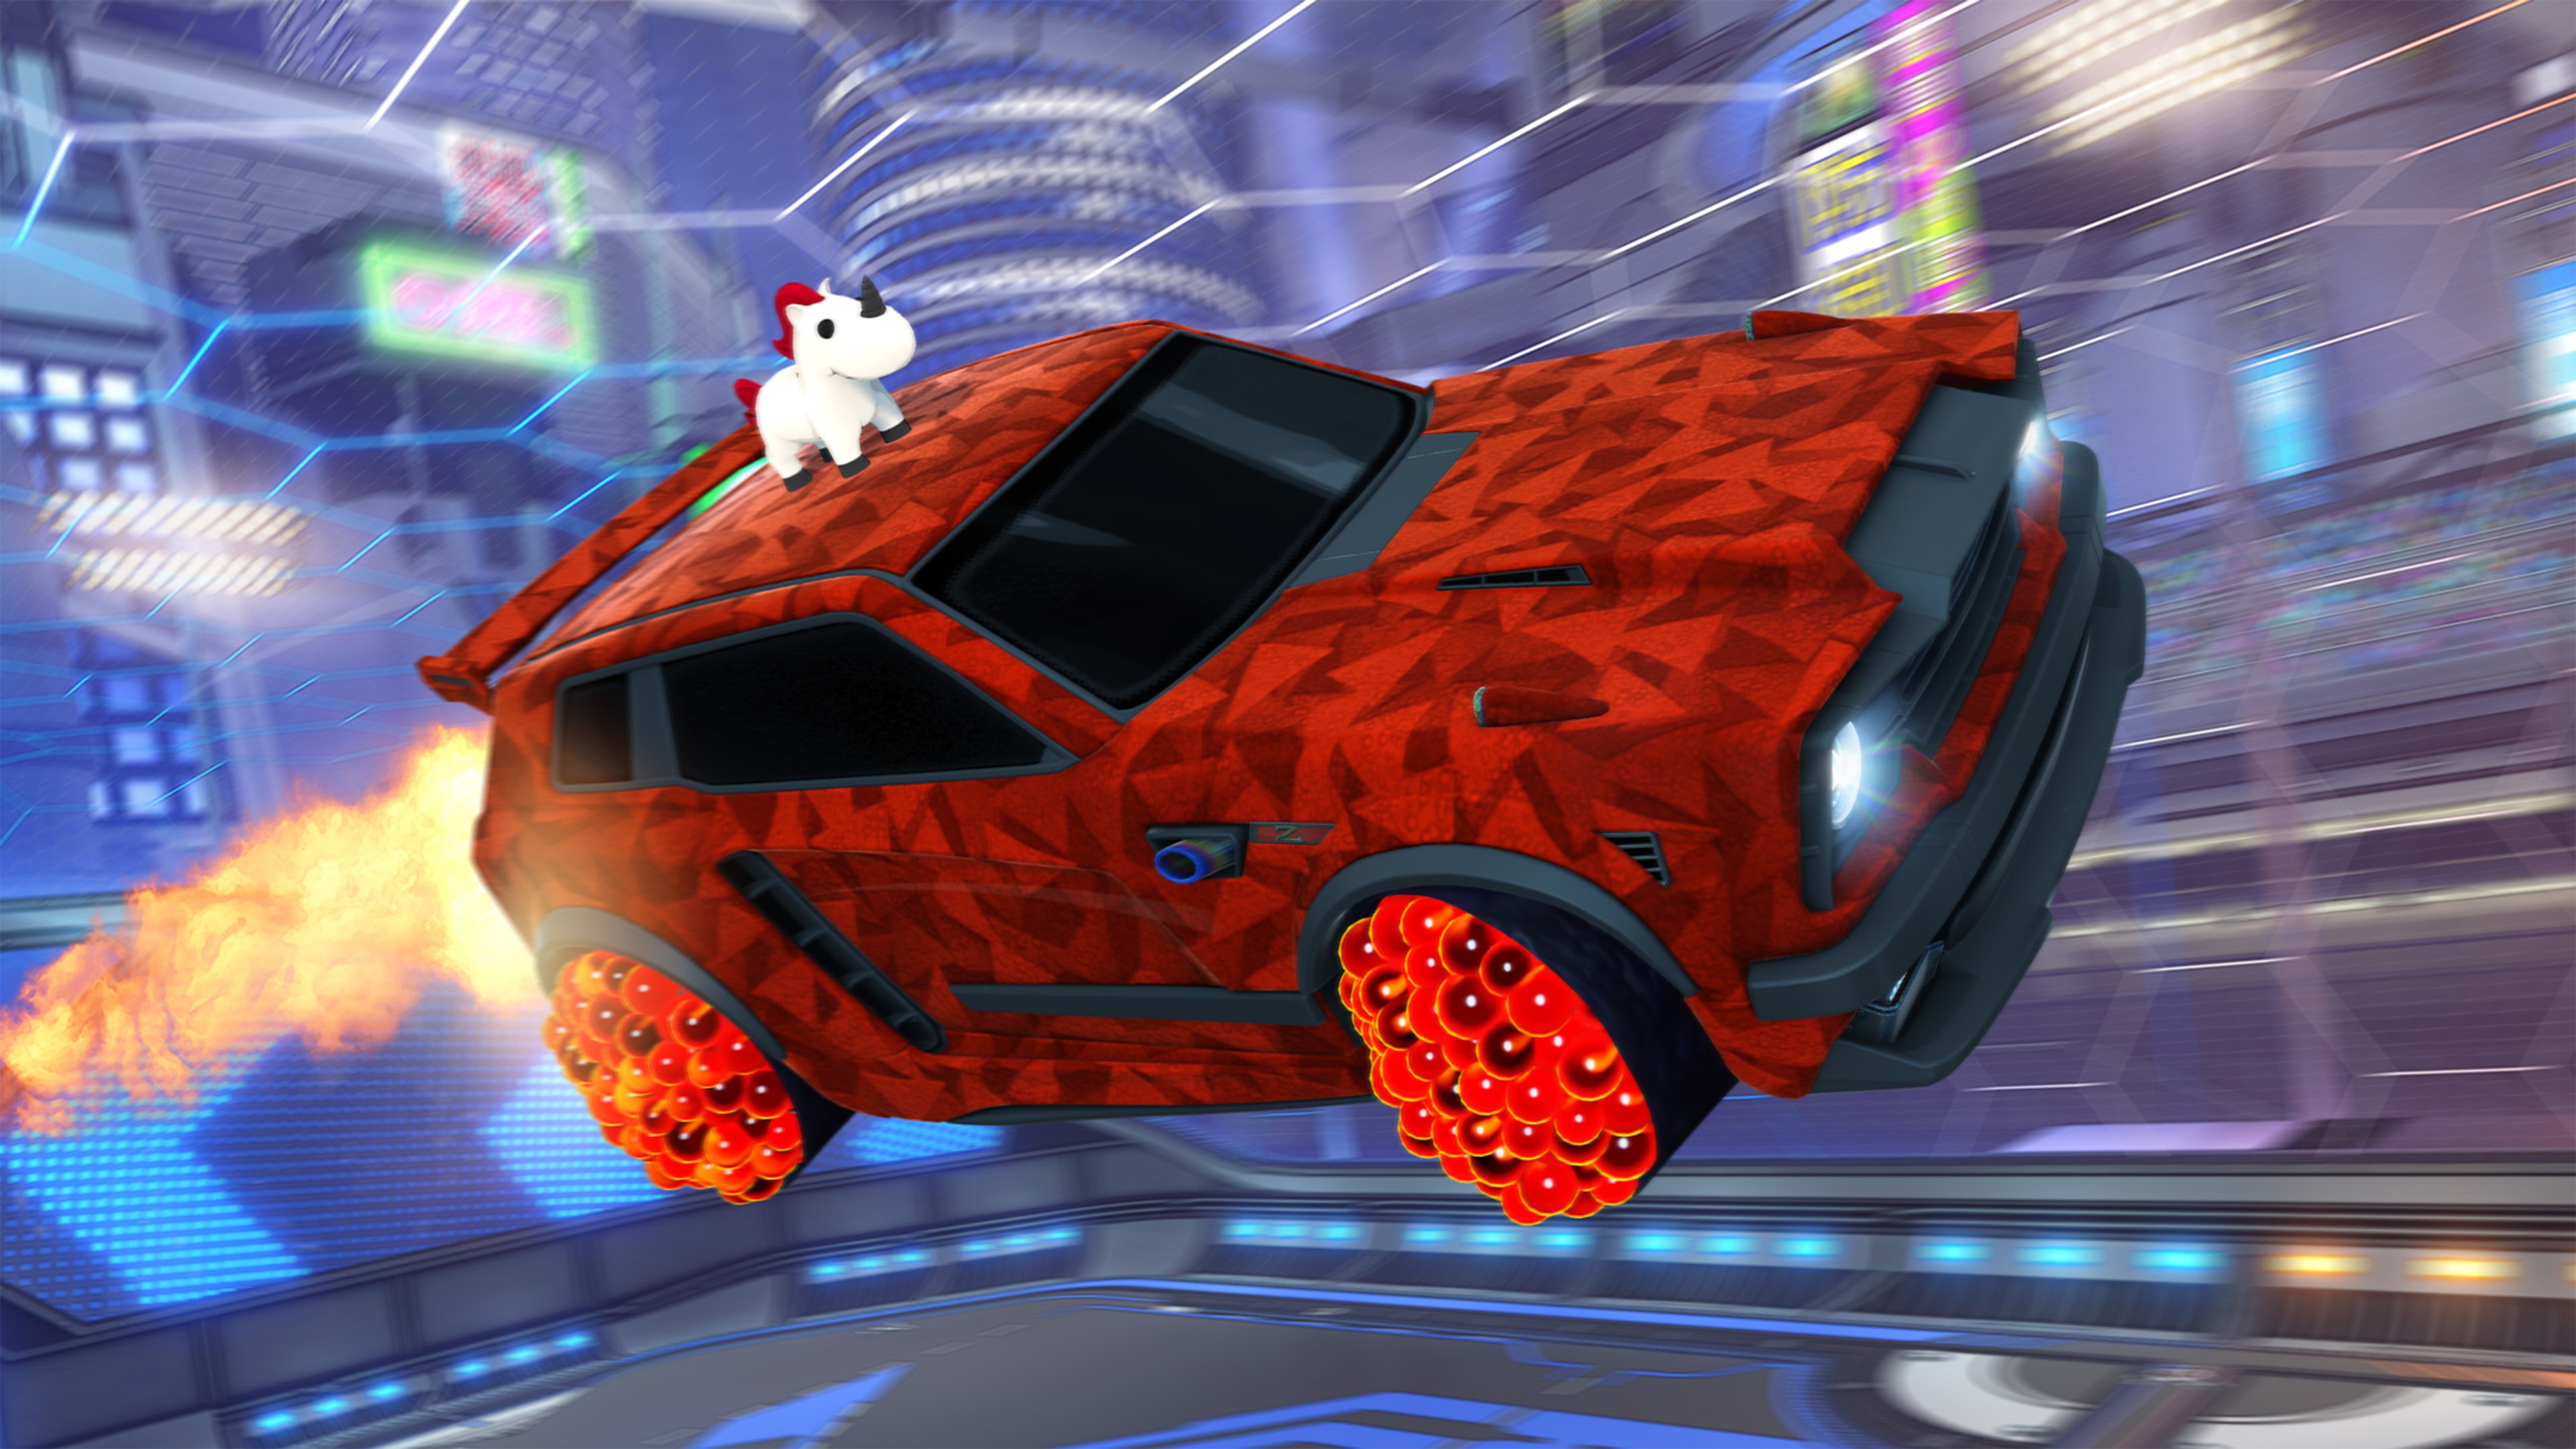 Rocket League ekran görüntüsü, tavanında tekboynuza benzeyen bir hayvan bulunan, kırmızı geometrik boyalı arabayı gösteriyor